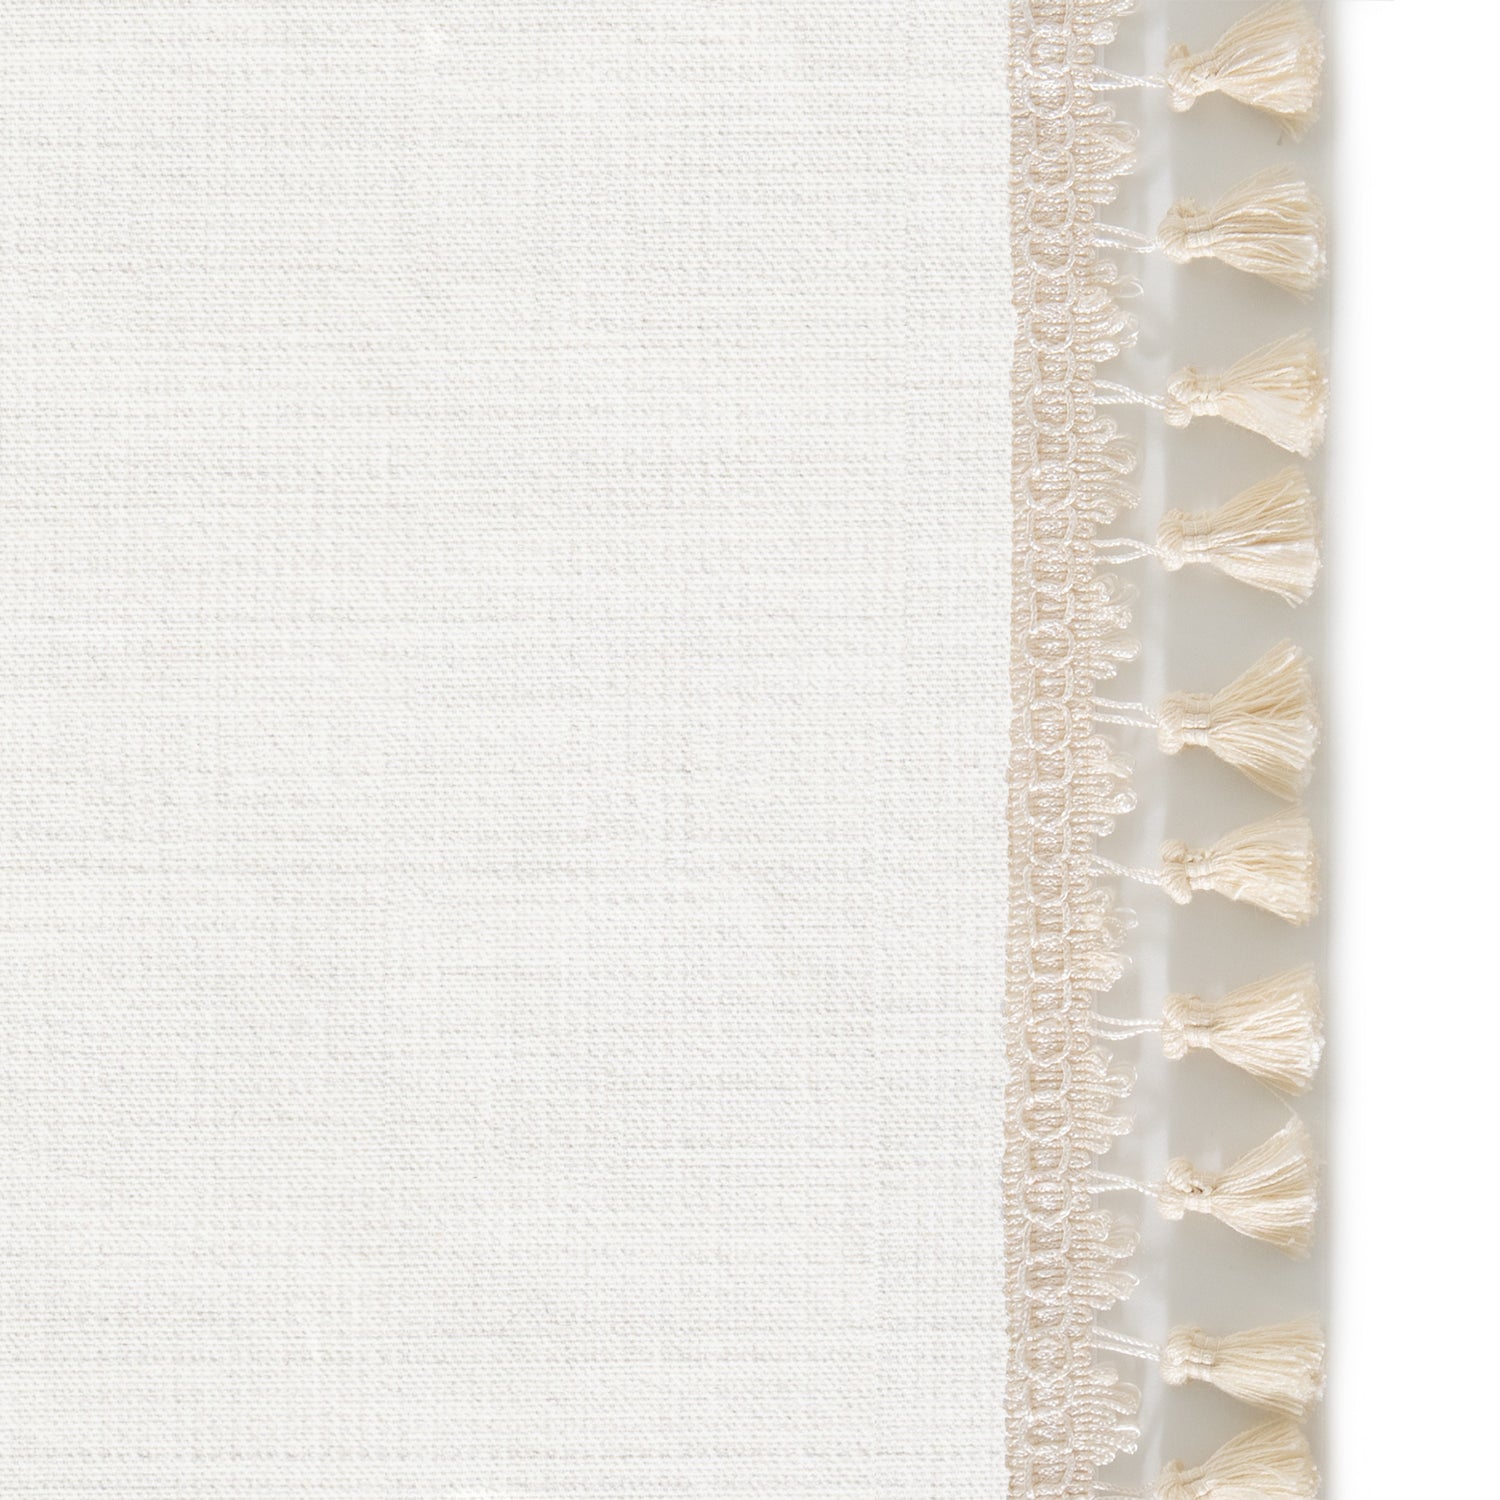 Upclose picture of Snow custom curtain with cream tassel trim